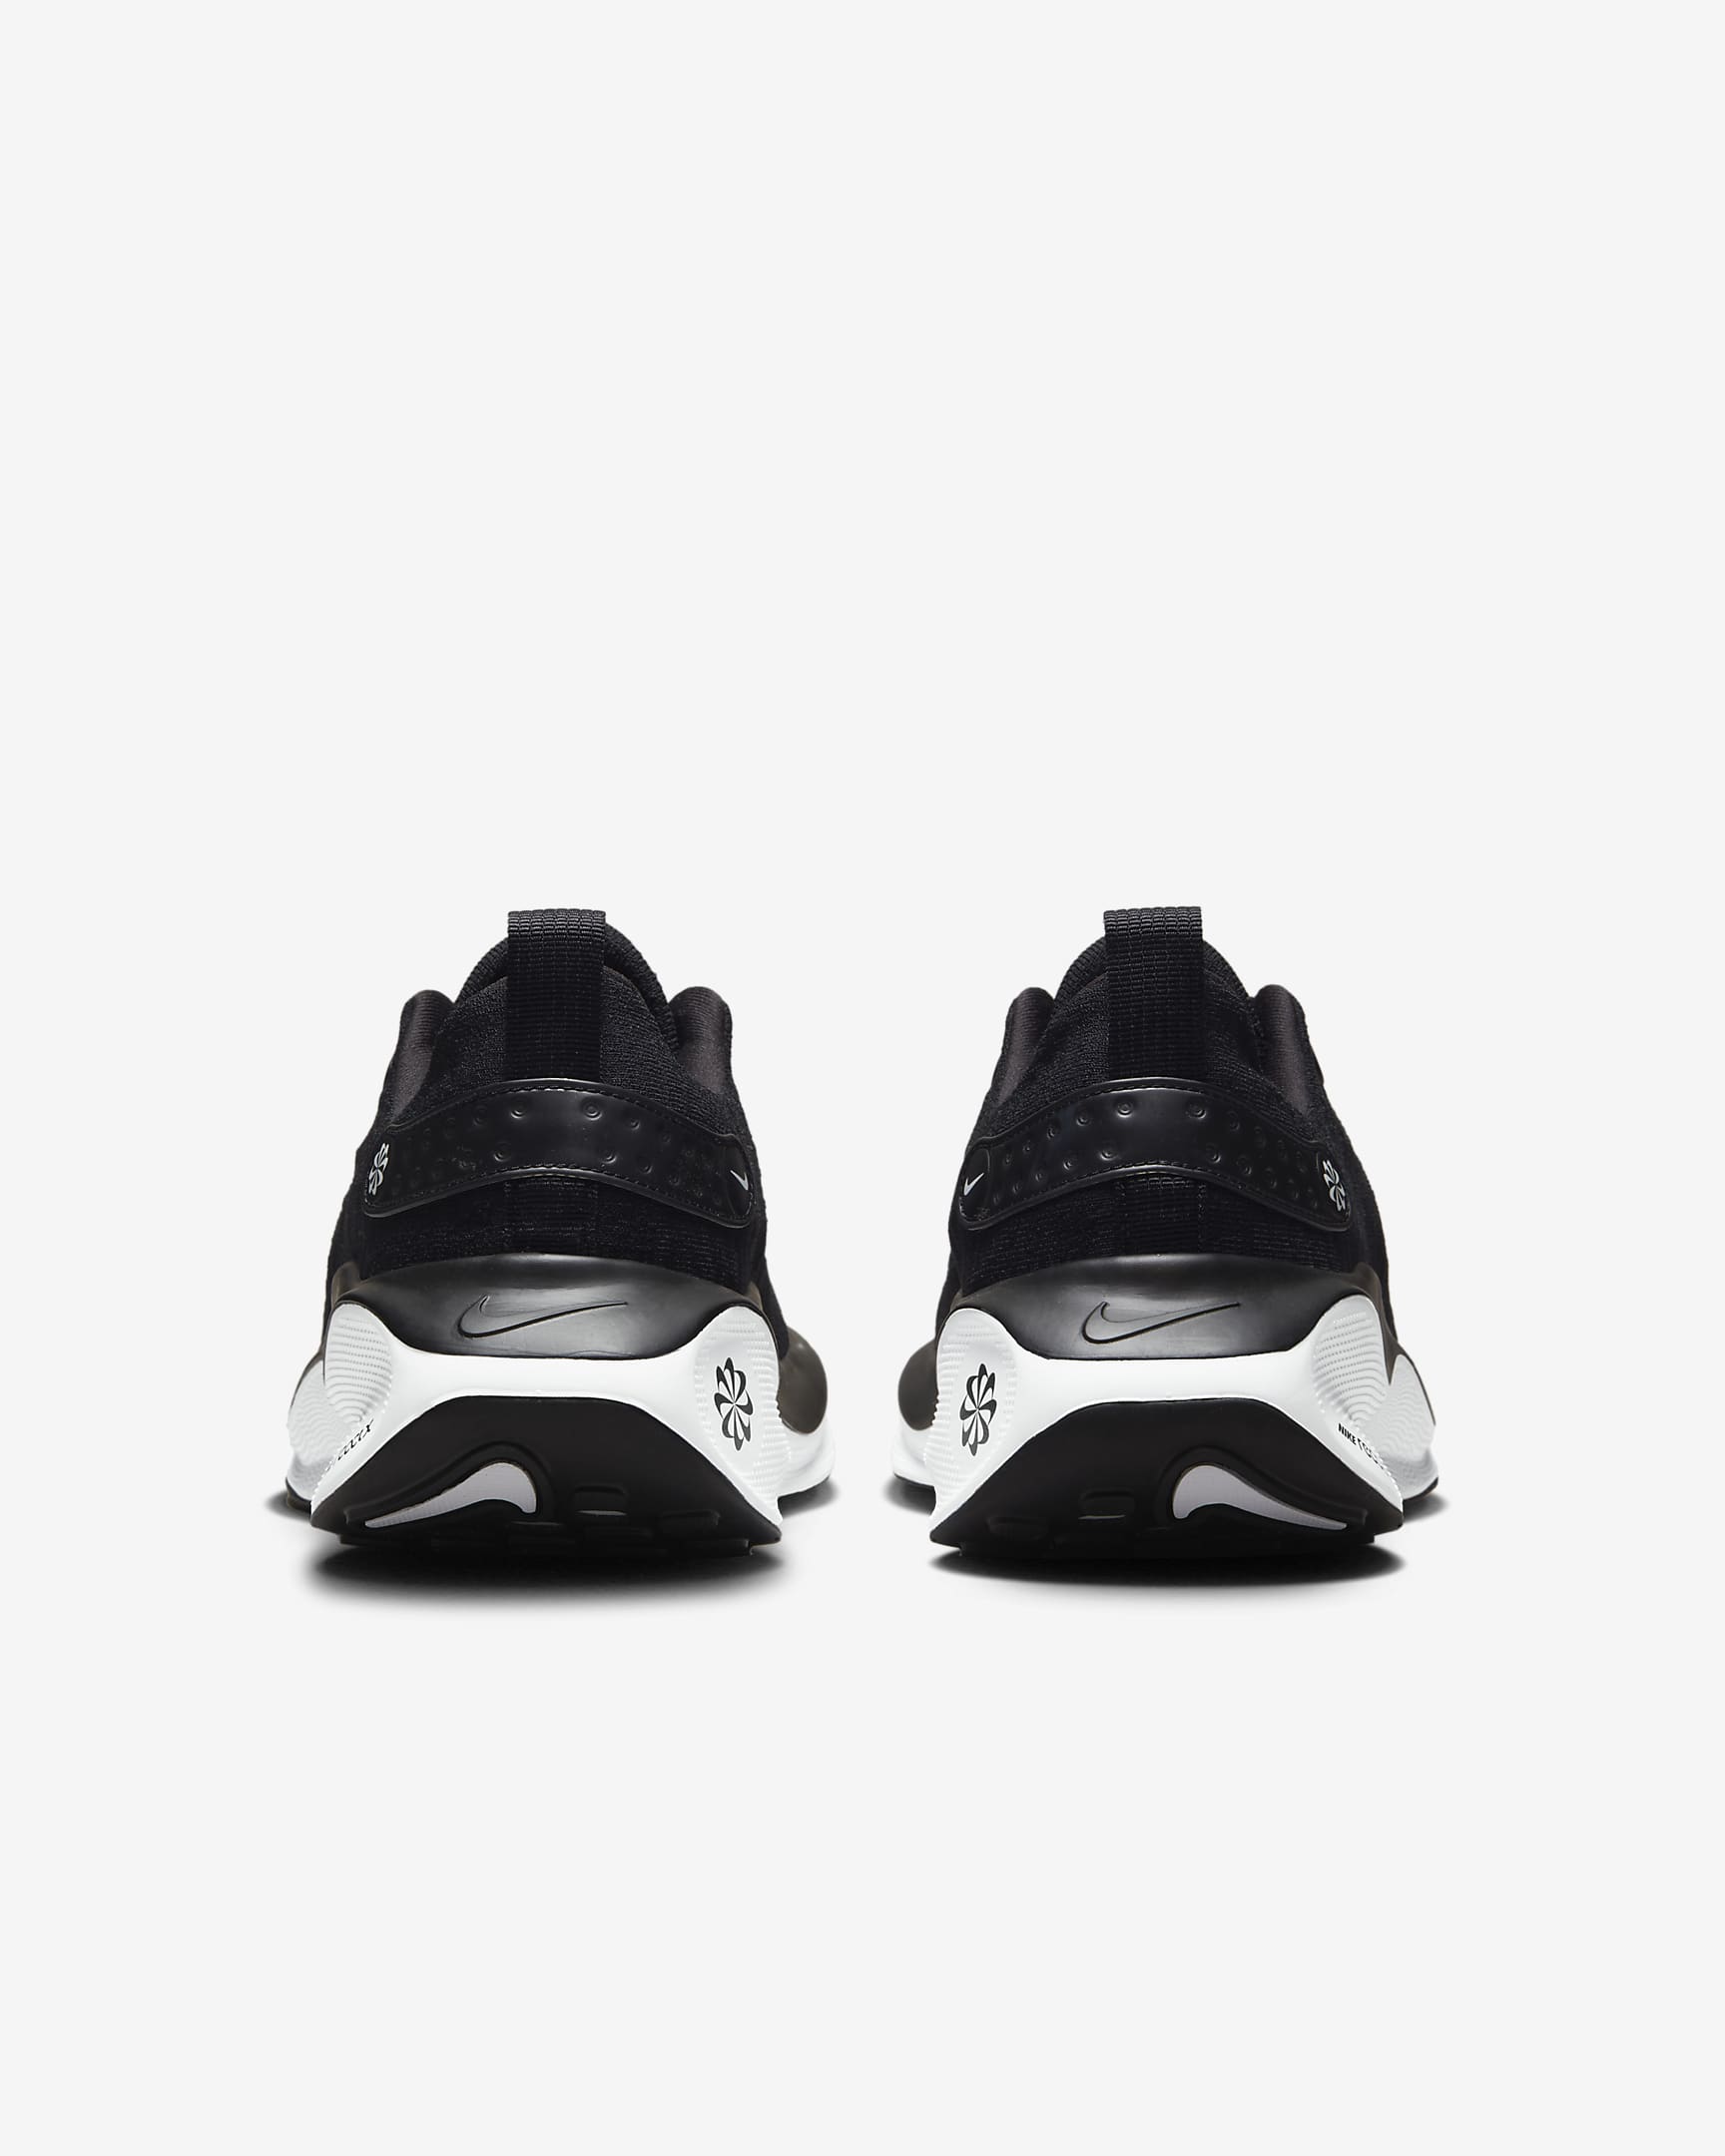 Giày Nike InfinityRN 4 Men Road Running Shoes #Black White - Kallos Vietnam